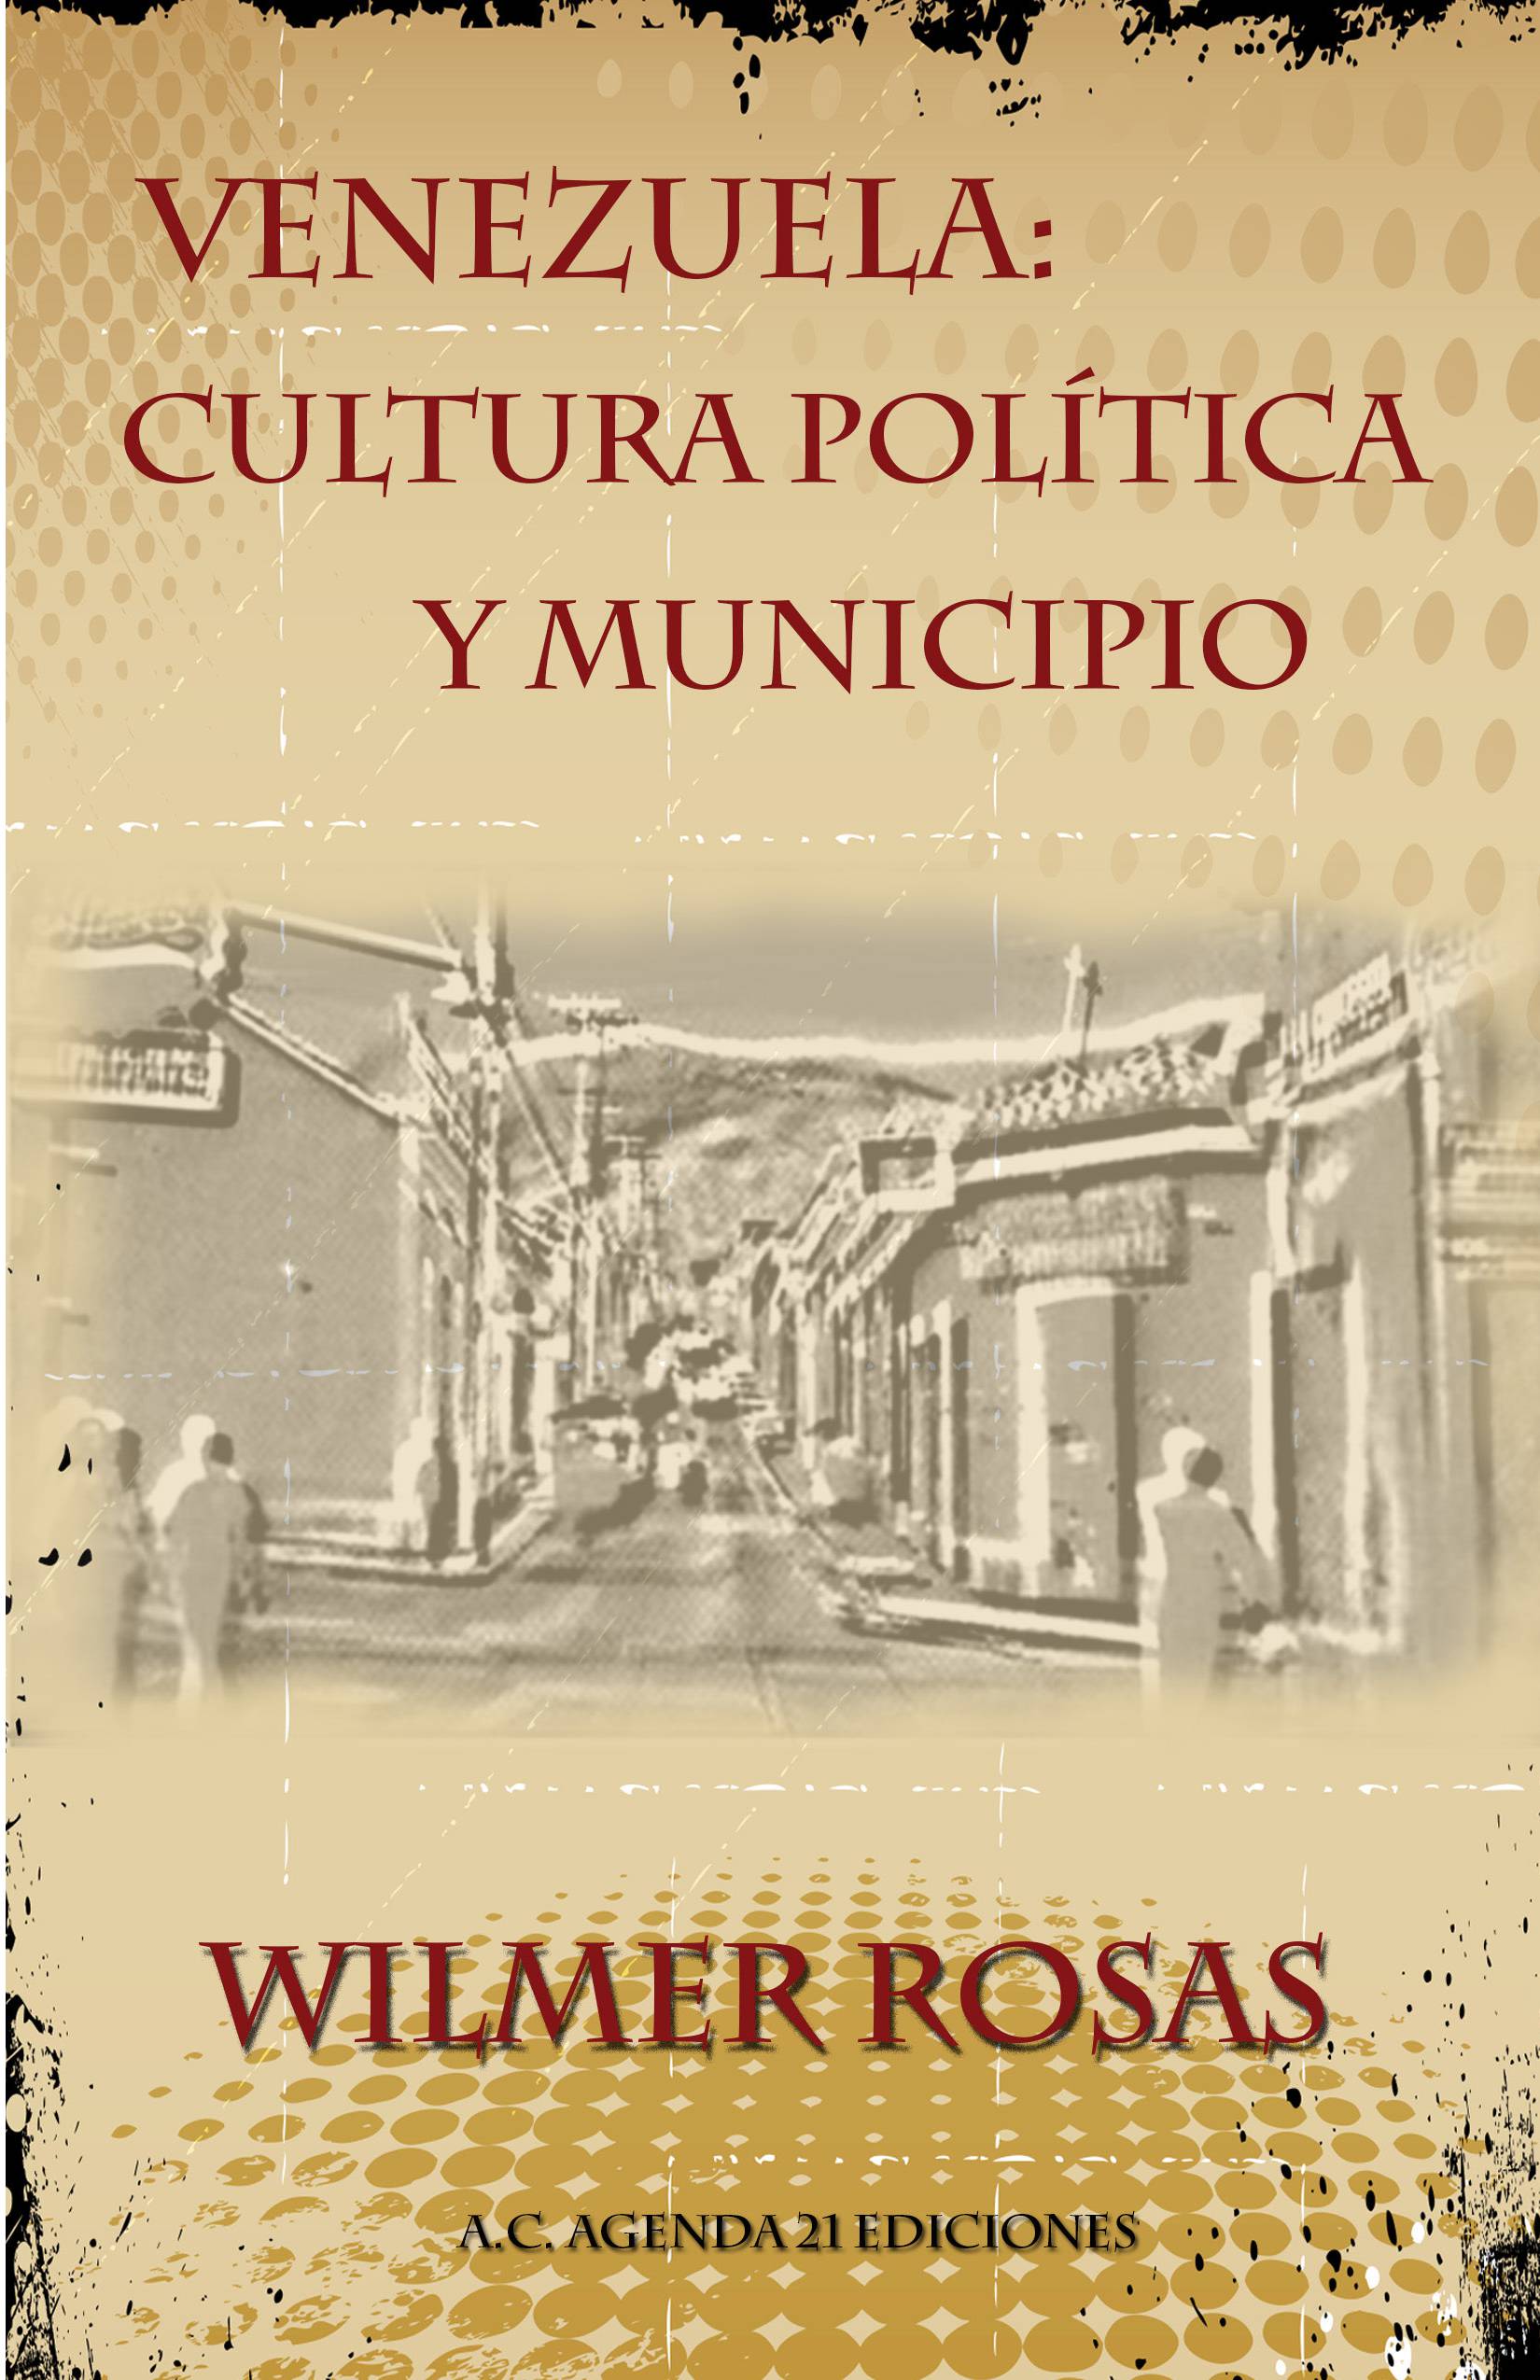 Wilmer Rosas y su nuevo E-Book: Revisar la cultura política para construir al país desde el municipio